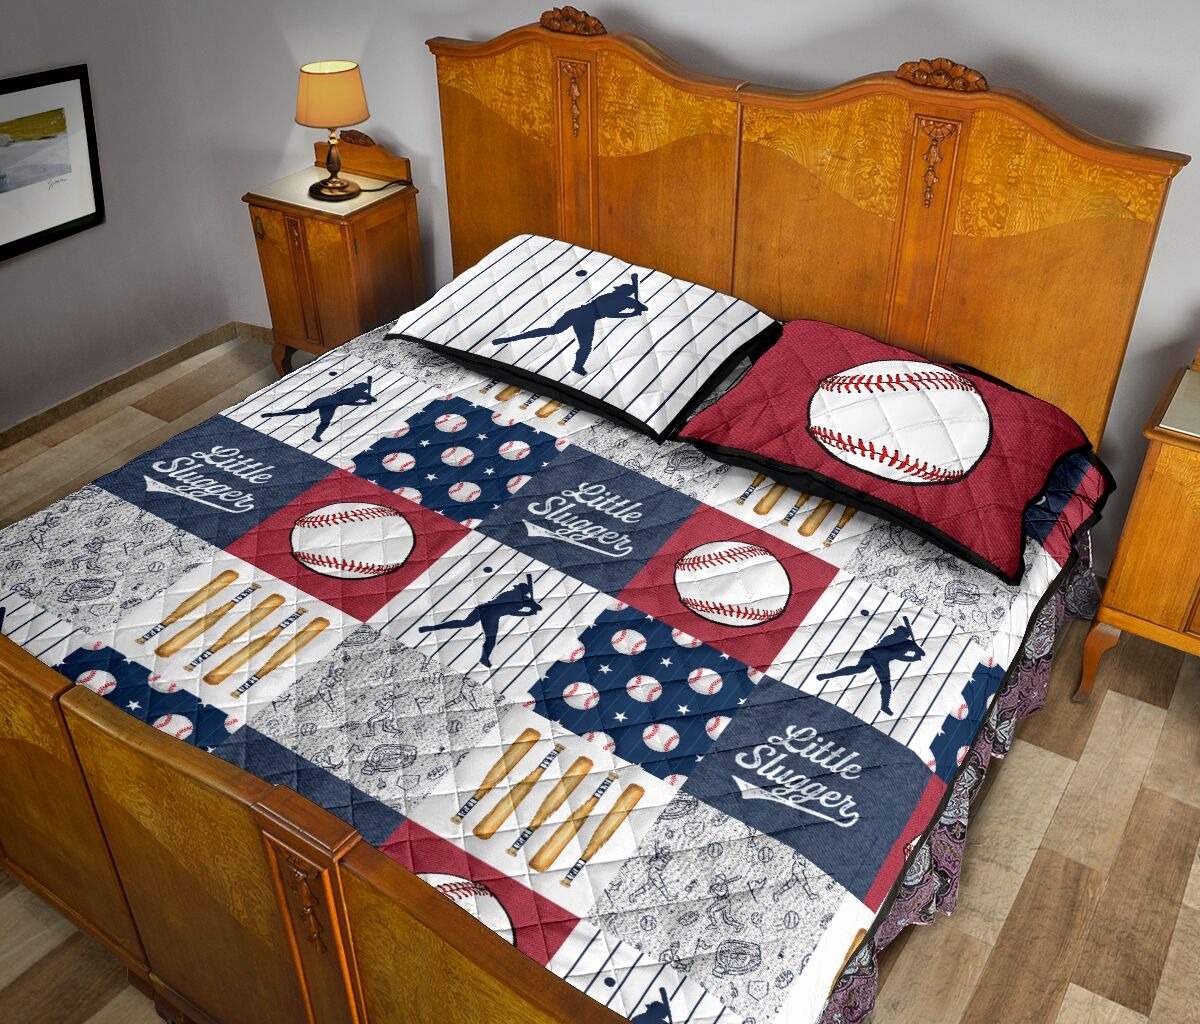 Baseball little slugger quilt bedding set3